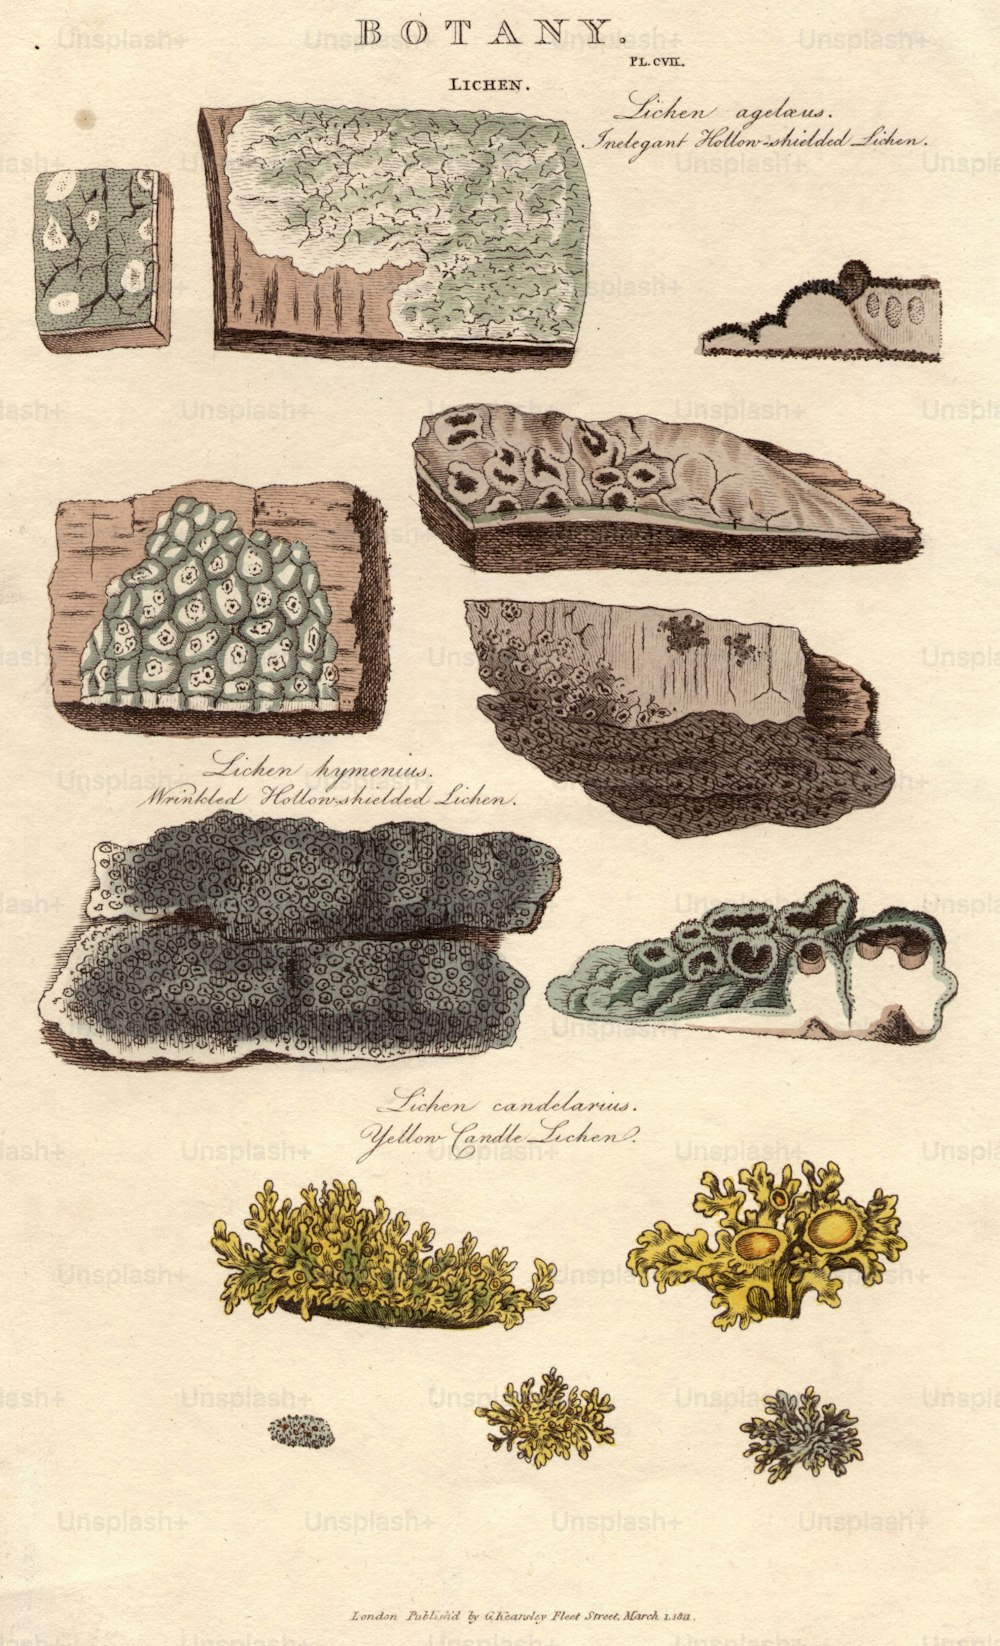 1 marzo 1812: Varie specie di licheni: l'inelegante lichene a scudo cavo (in alto), il lichene a scudo cavo rugoso (al centro) e il lichene a candela giallo (in basso).  (Foto di Hulton Archive/Getty Images)